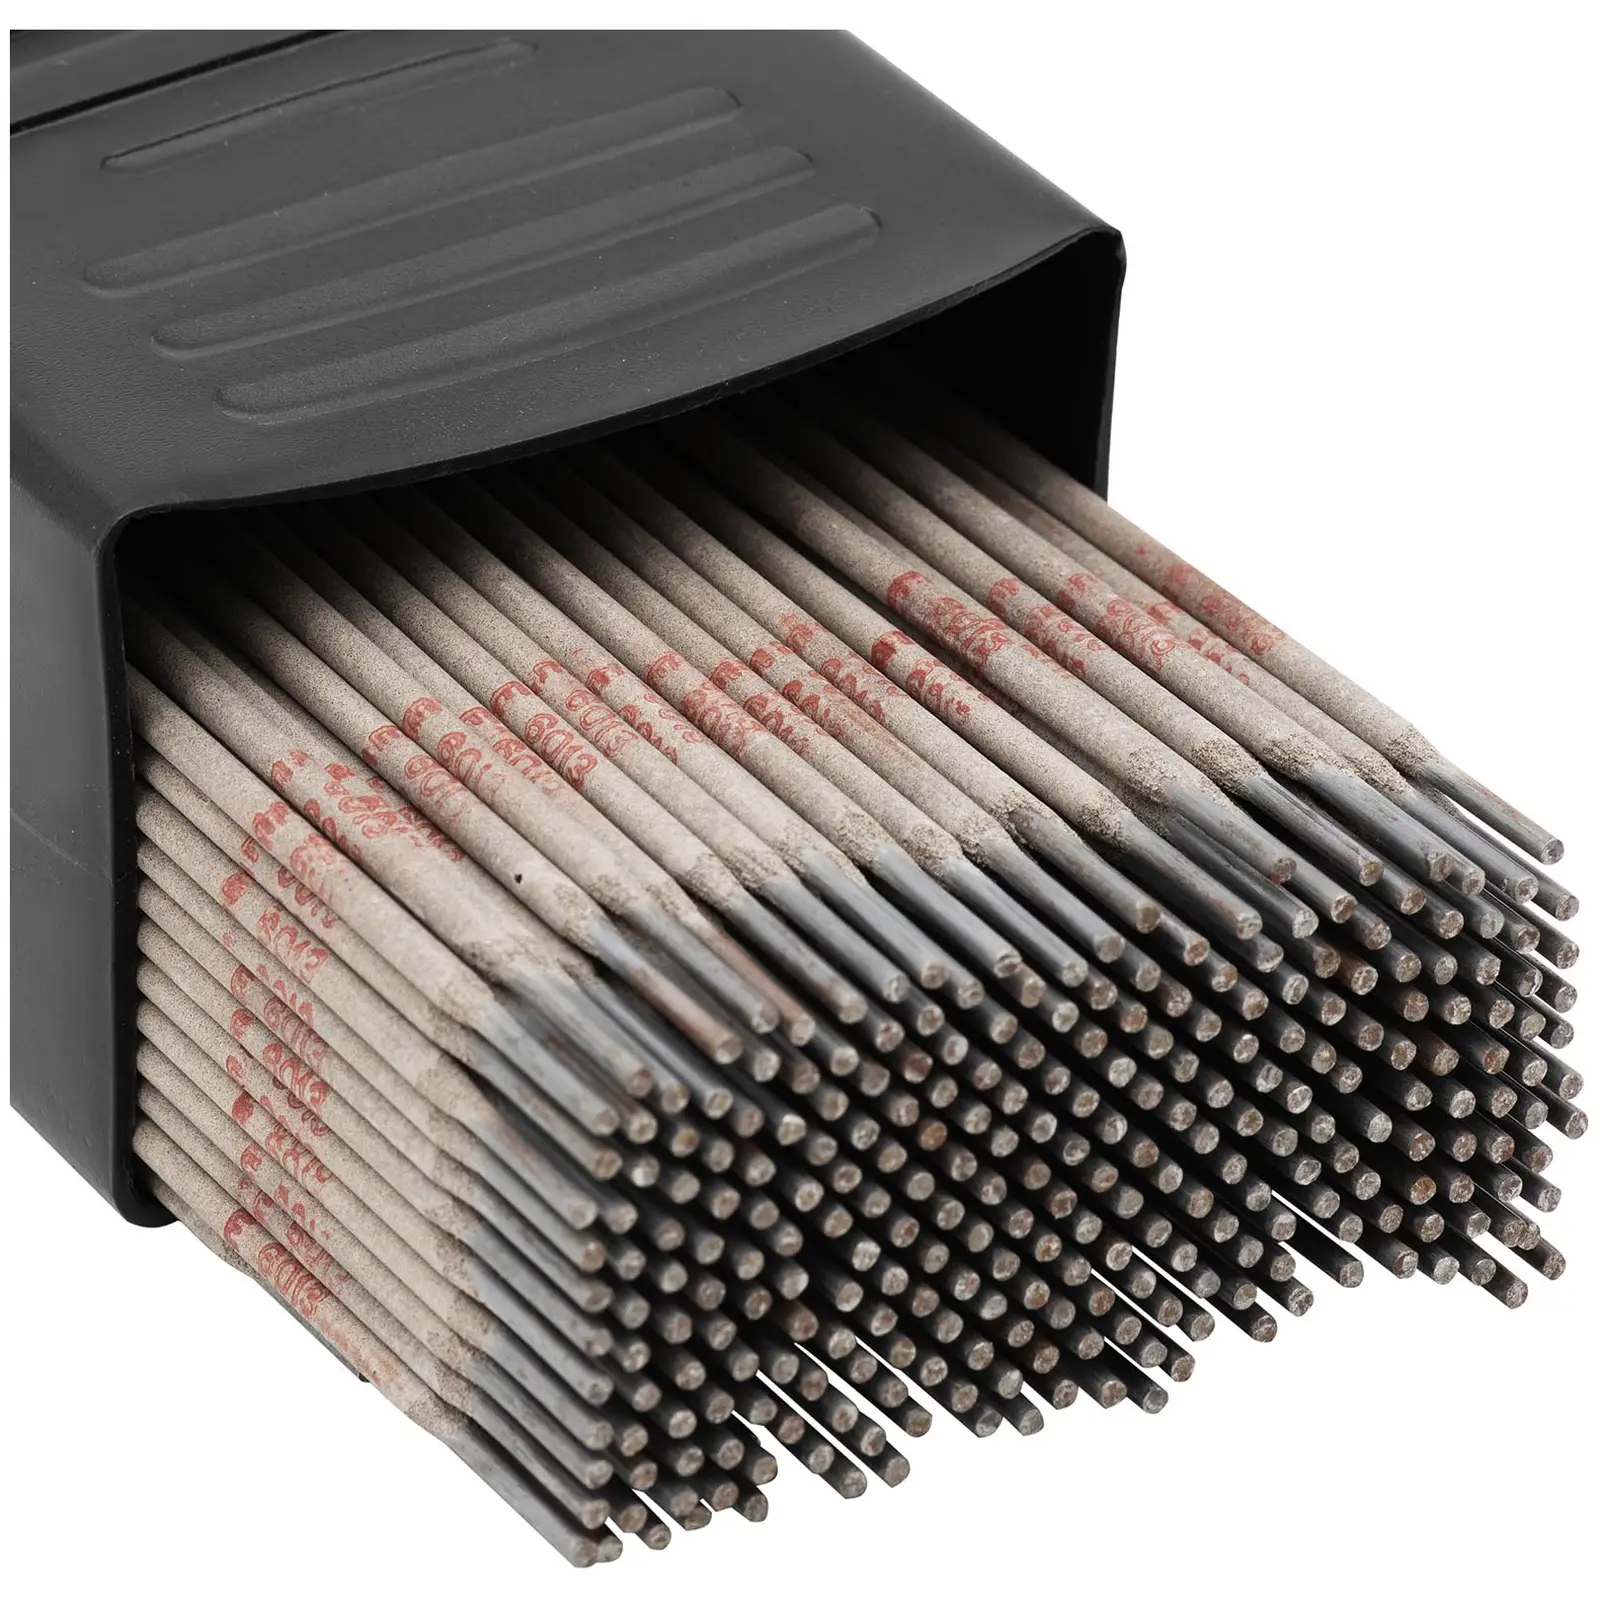 Svejsesæt elektrodesvejser 250 A - 8 m Kabel - svejseelektroder E6013 - 2,5 x 350 mm - 5 kg og E6013 - 3,2 x 350 mm - 5 kg